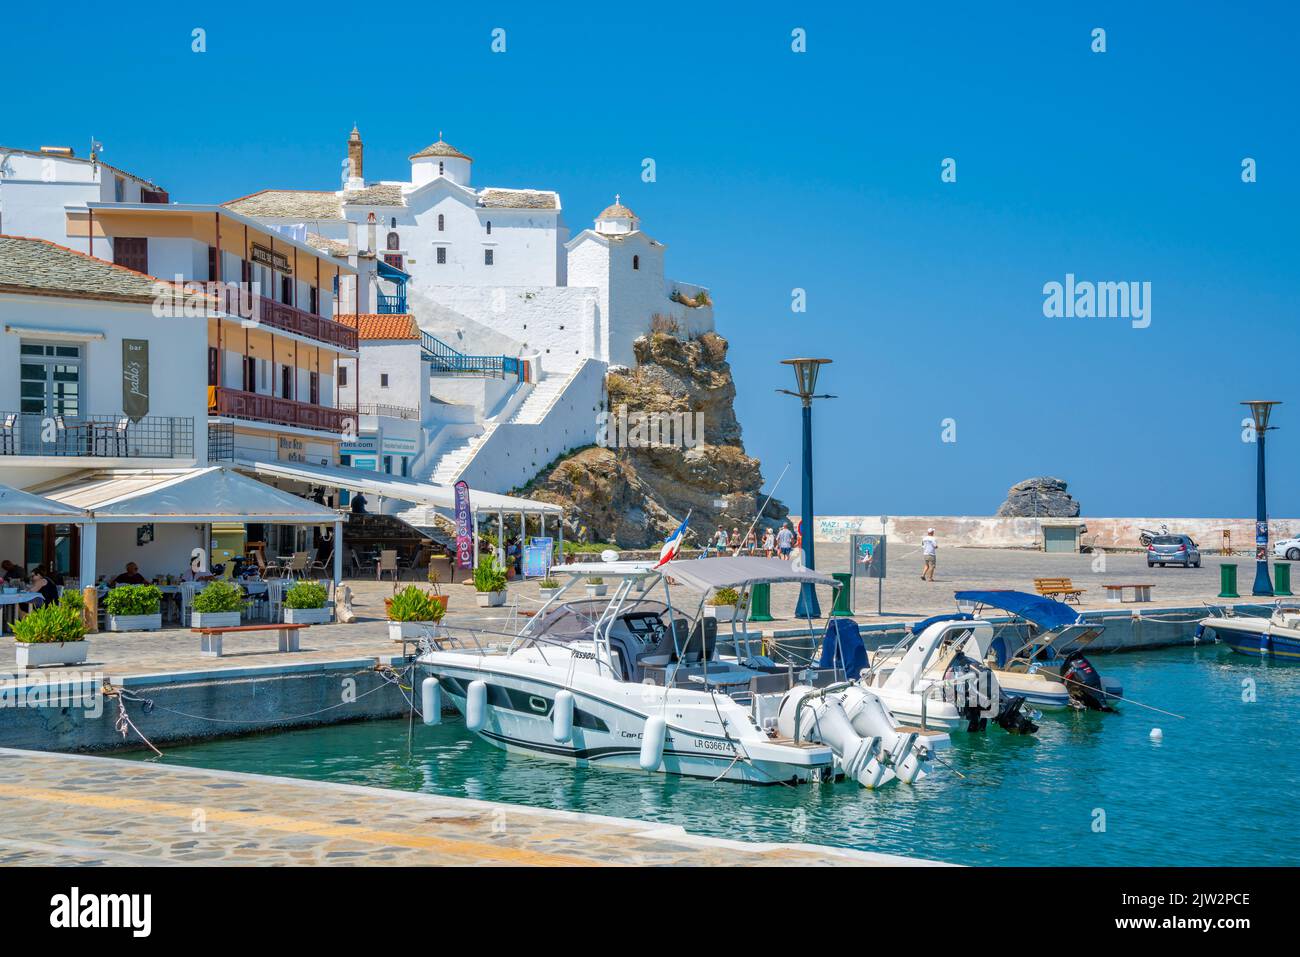 Vue sur la ville surplombant le port, la ville de Skopelos, l'île de Skopelos, les îles Sporades, les îles grecques, Grèce, Europe Banque D'Images